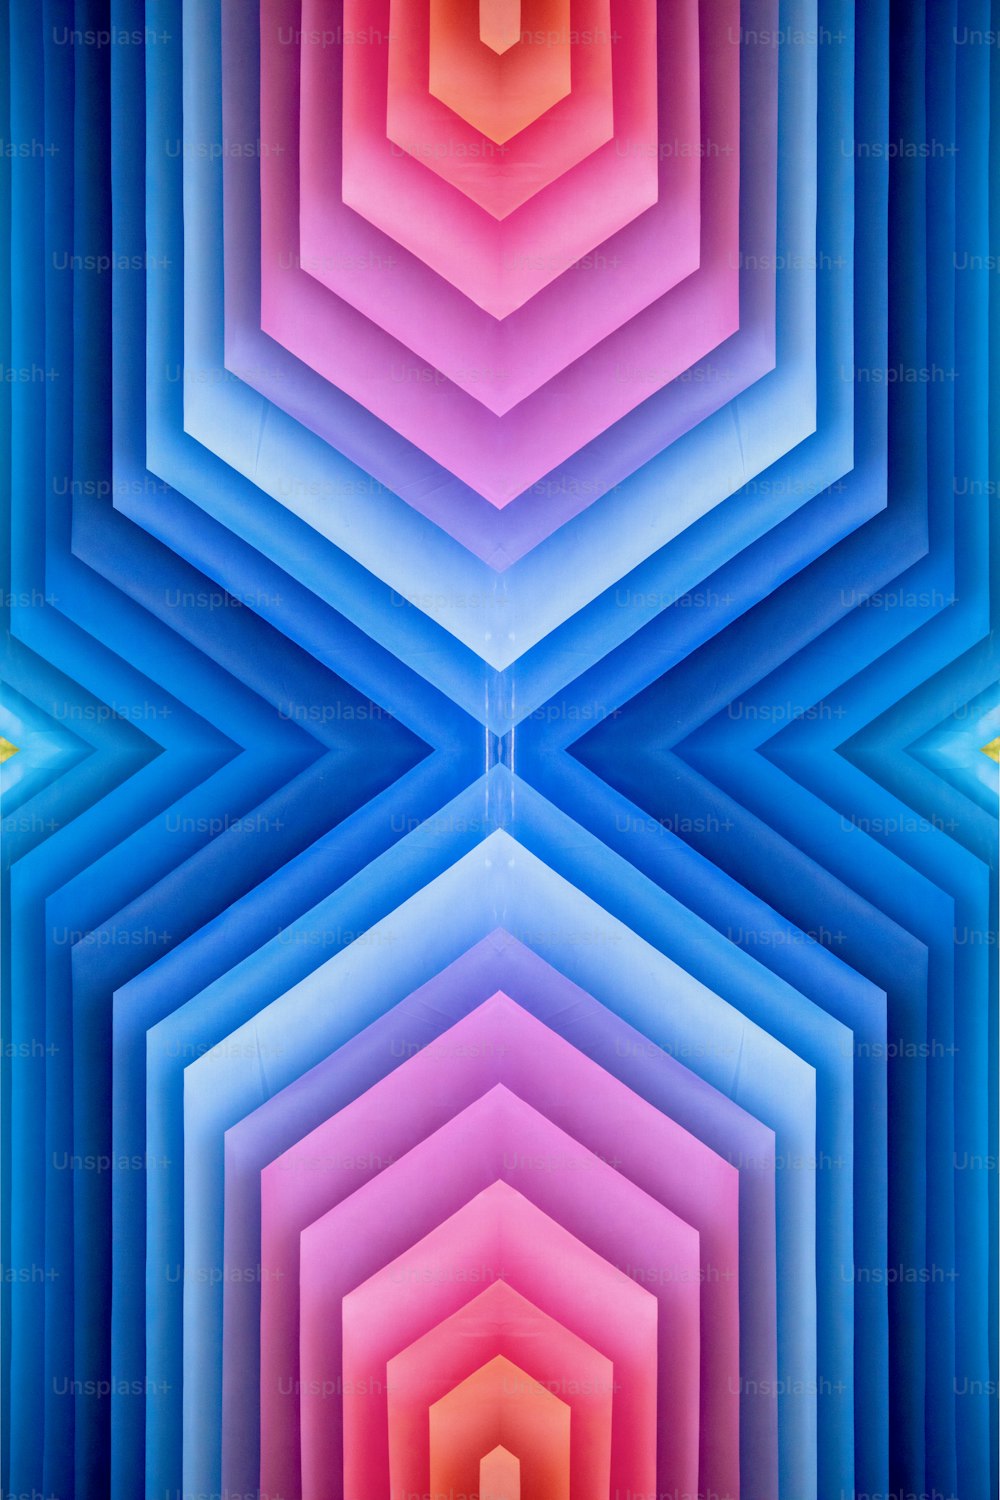 Une image abstraite d’une structure hexagonale multicolore